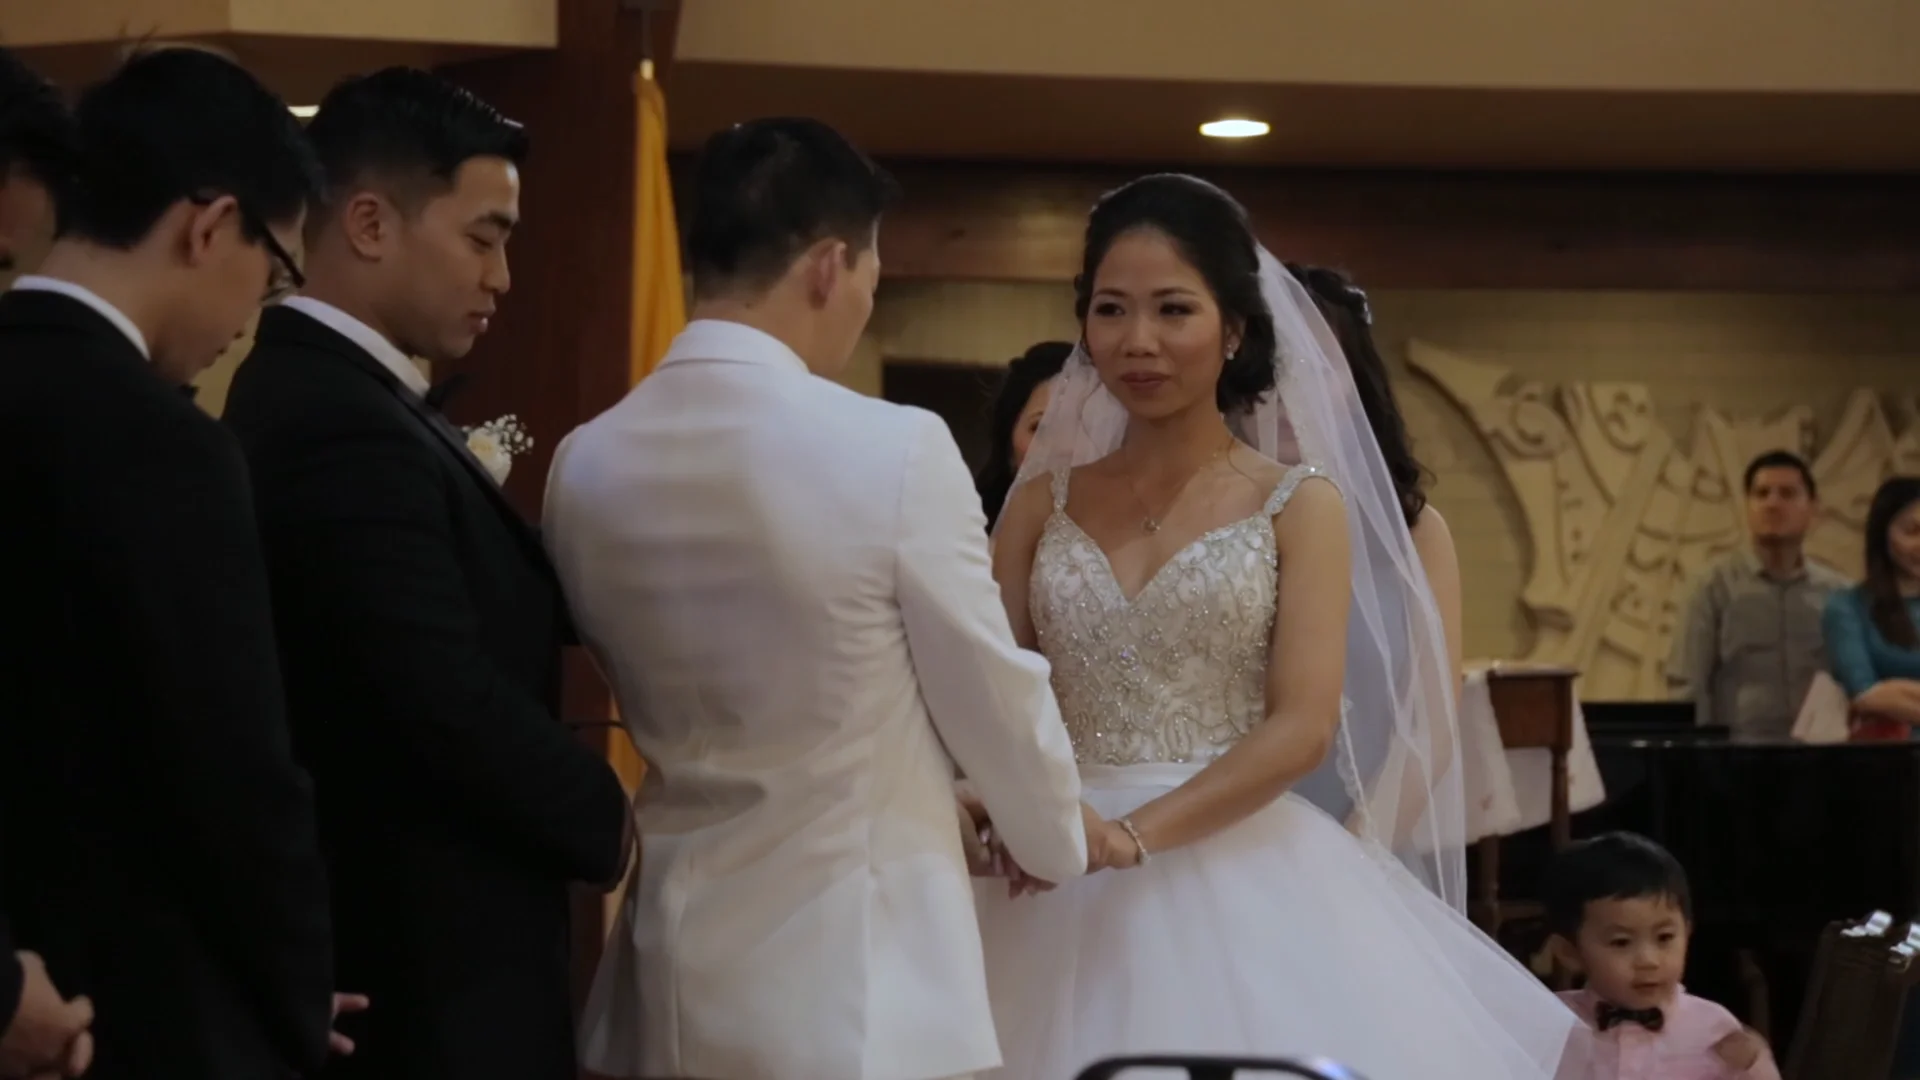 Nguyen Wedding Ceremony & Reception on Vimeo